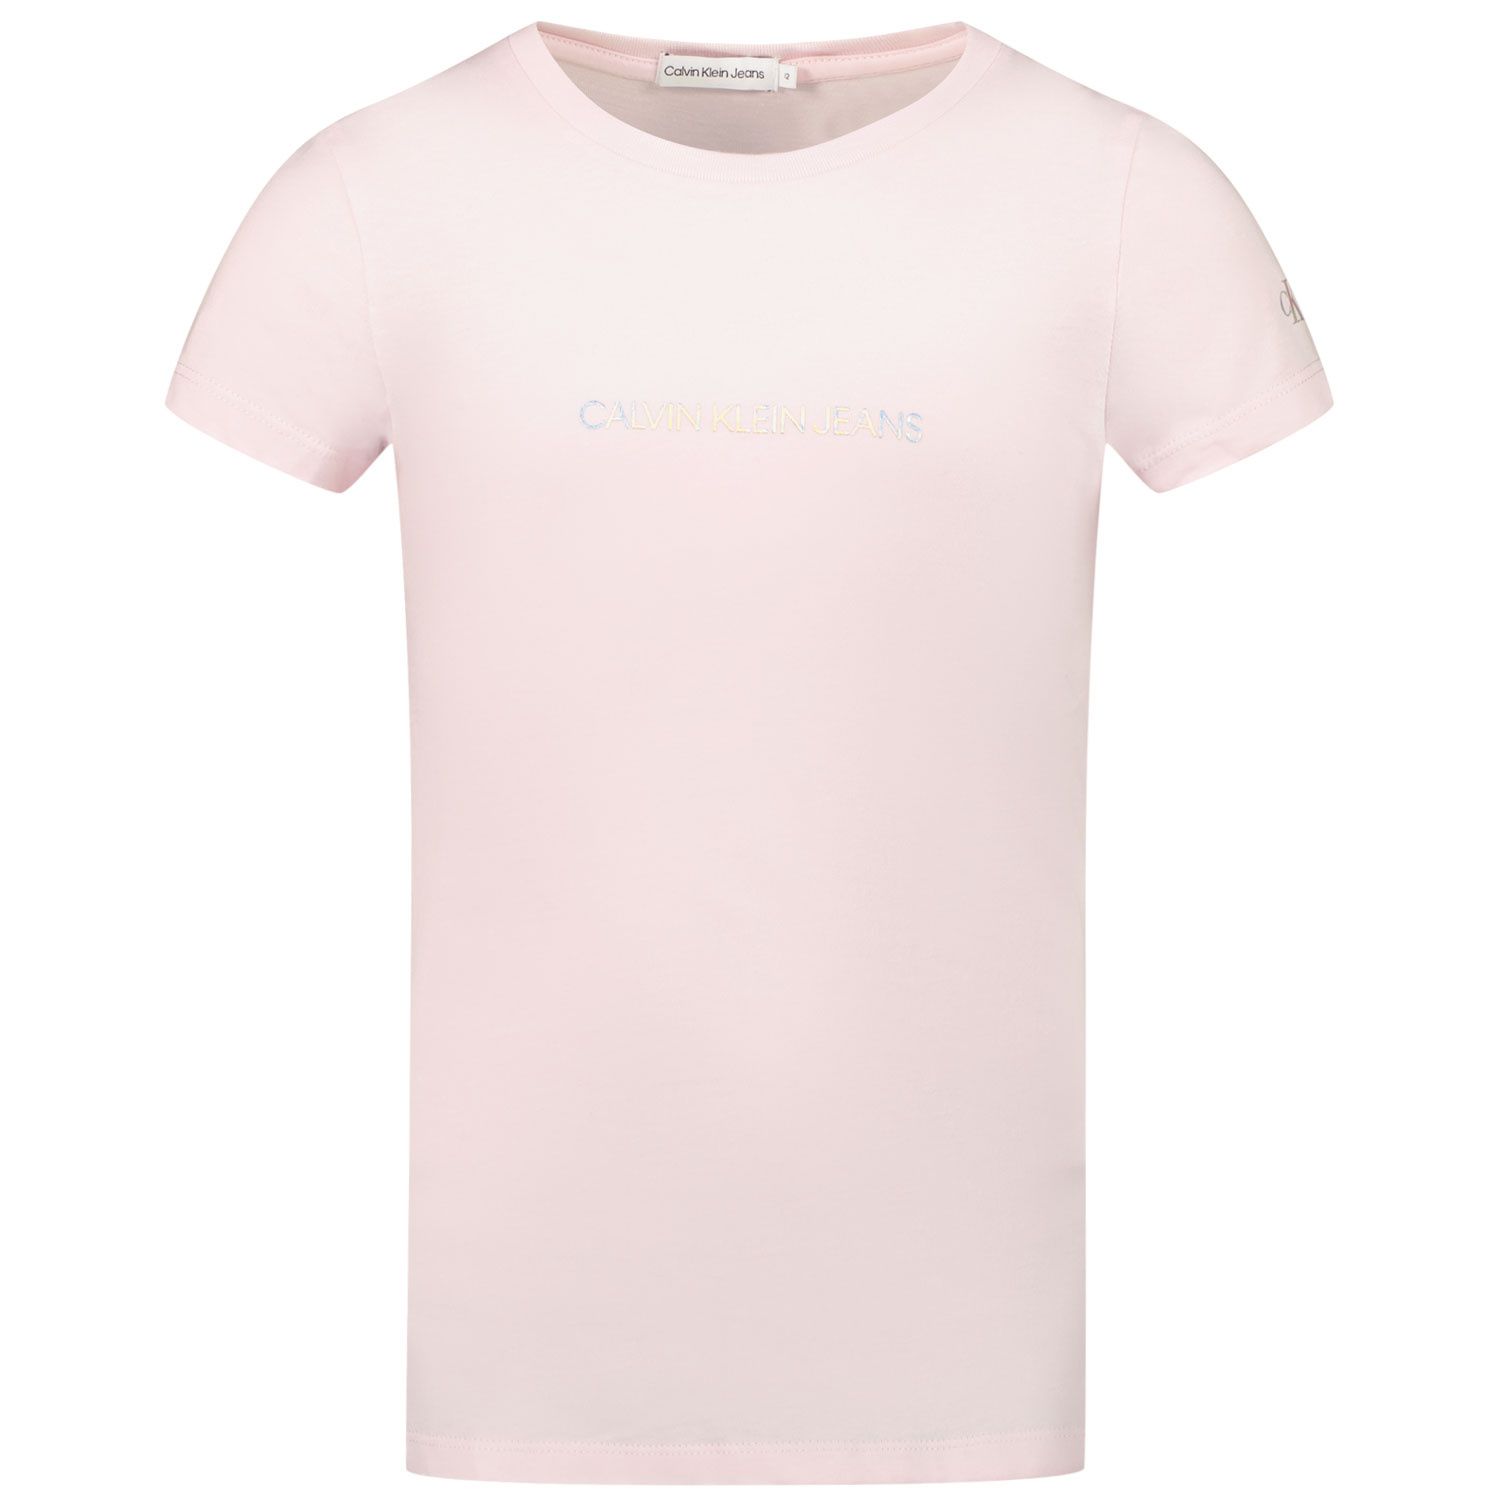 Afbeelding van Calvin Klein IG0IG00615 kinder t-shirt roze